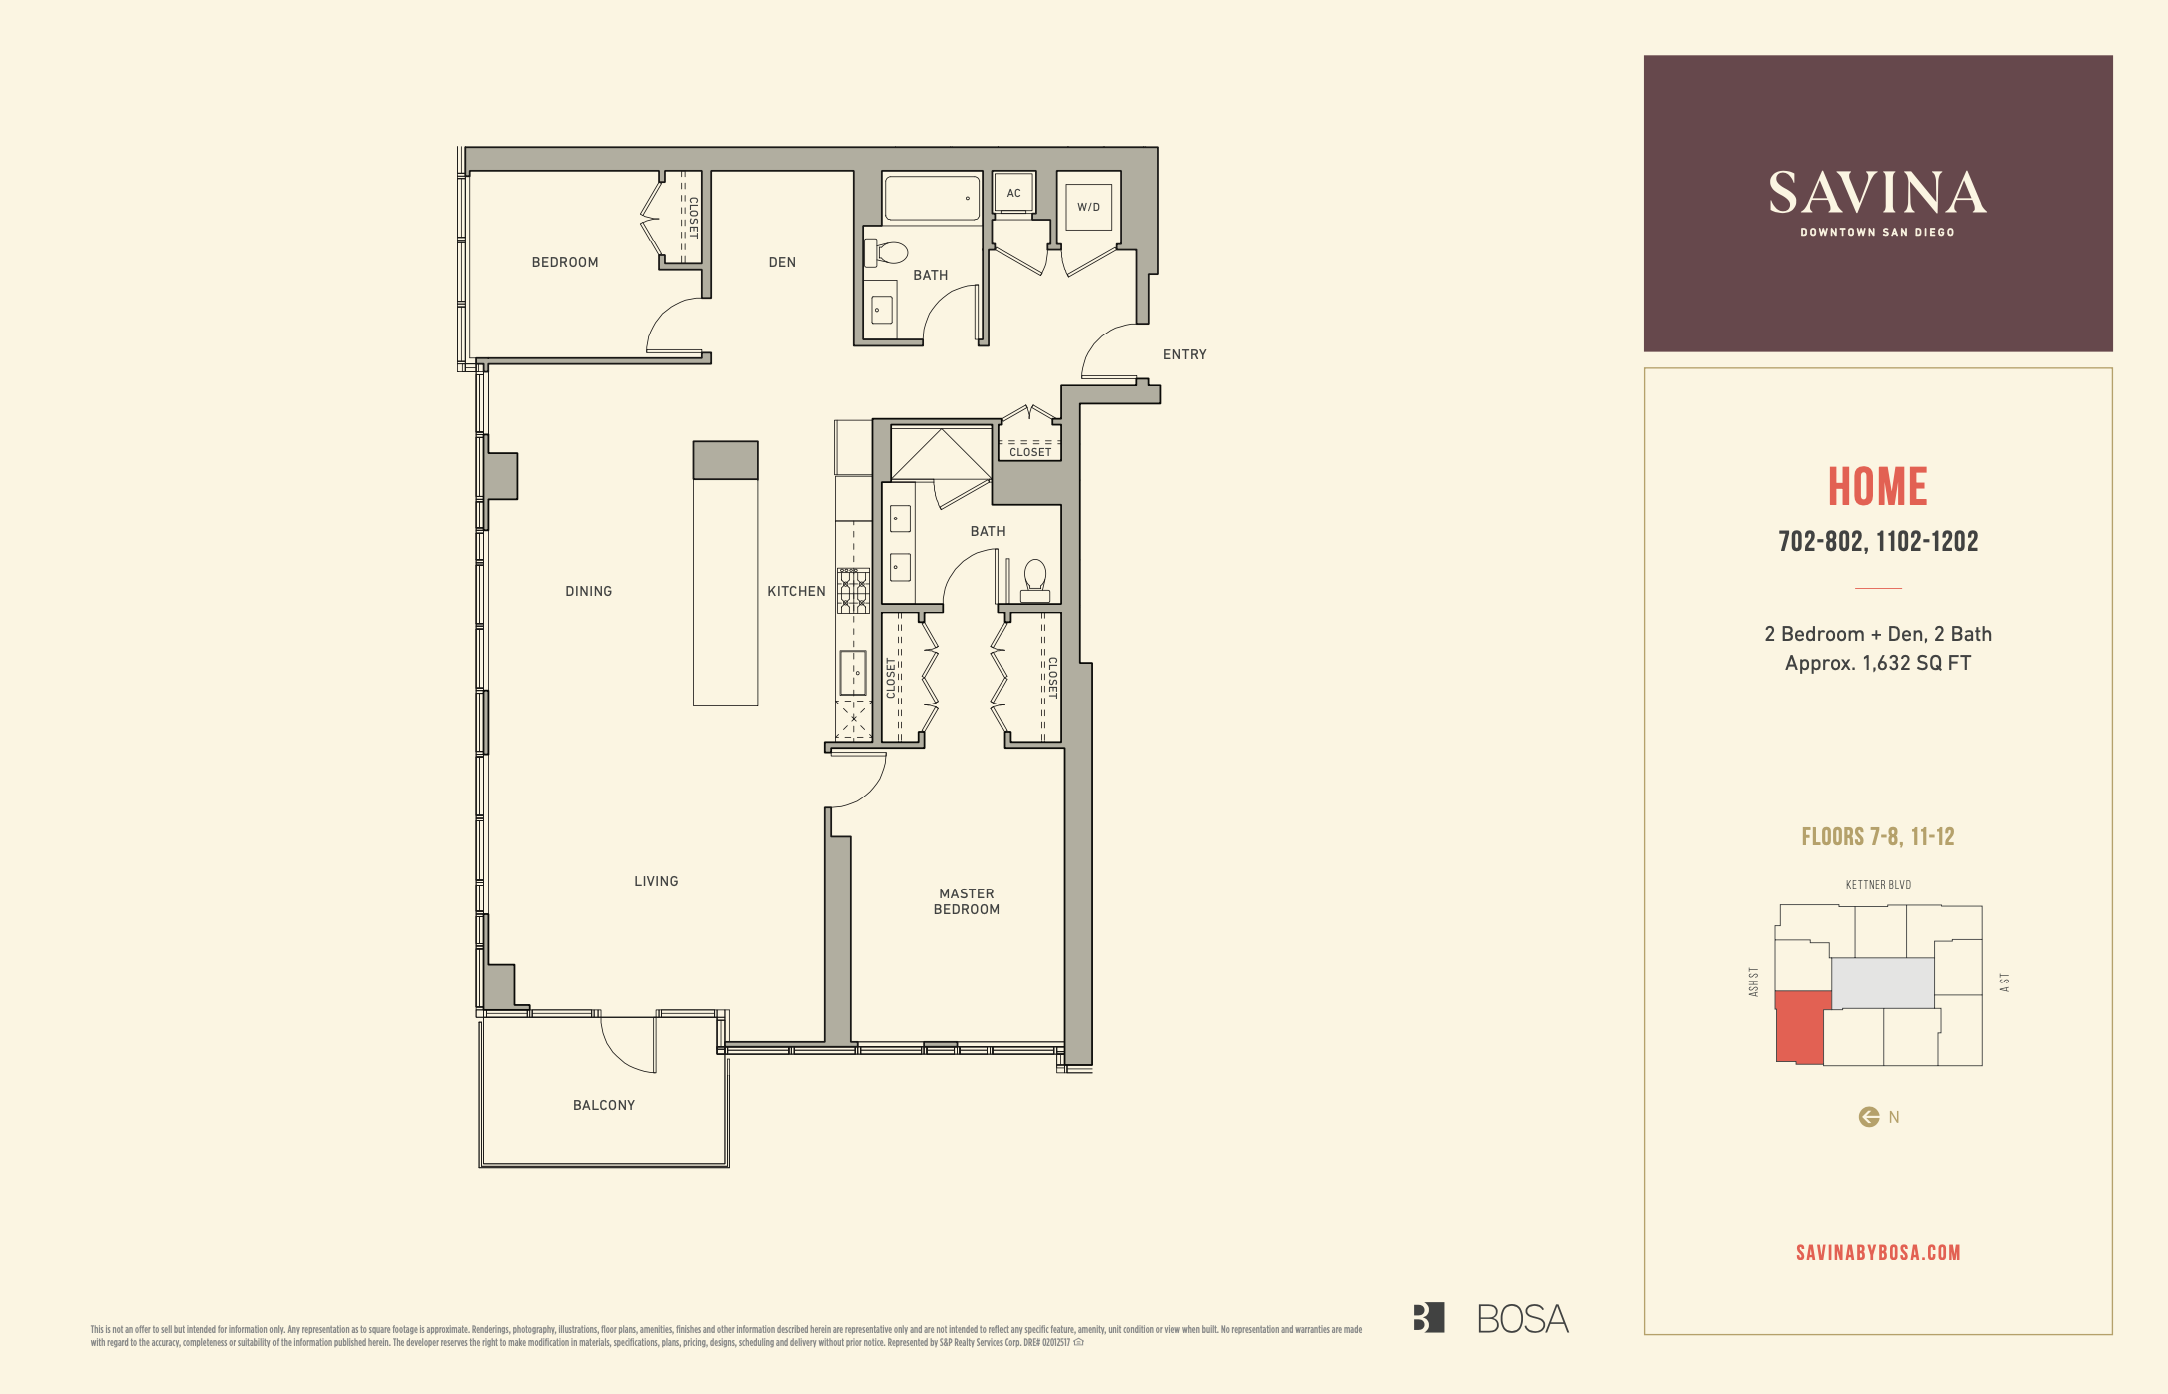 Savina residence 702, 802, 1102 and 1202 floor plan